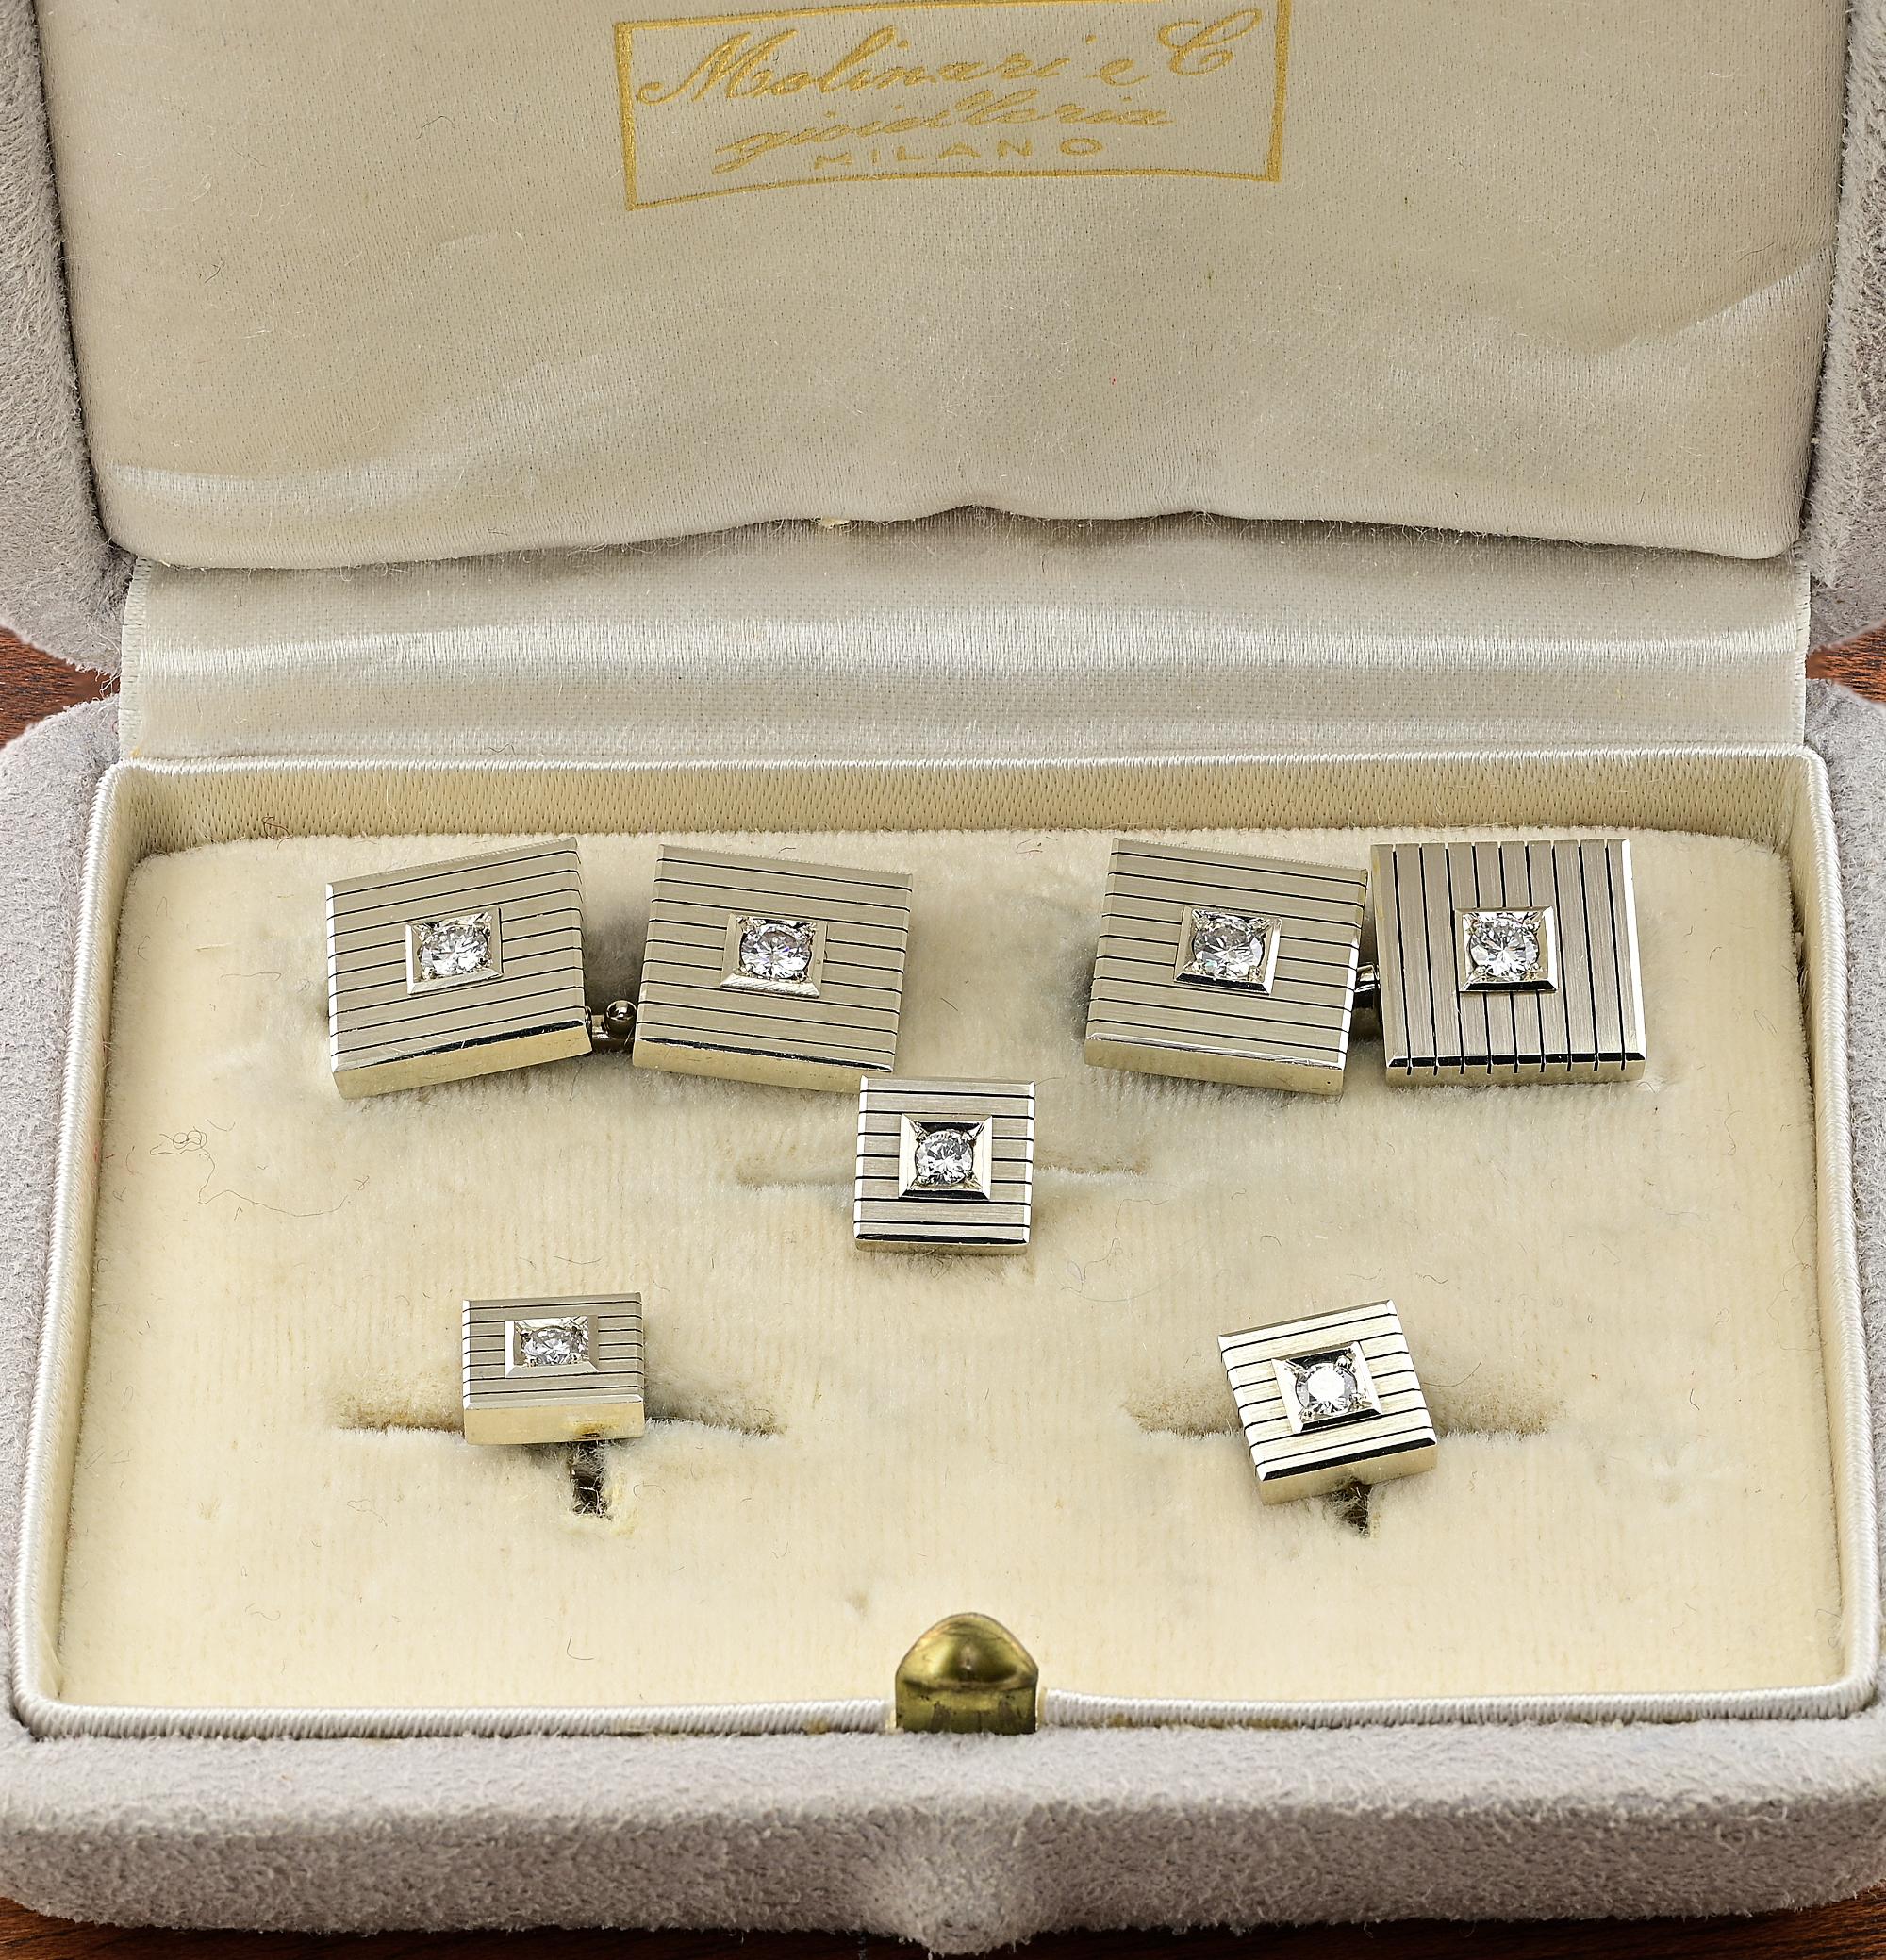 Diese atemberaubende Mitte des Jahrhunderts Diamond Cufflink Smoking-Set ist 1970 ca.
Italienisch made in Mailand
Faszinierende Geometrien der 70er Jahre - robustes, quadratisches Design aus massivem 18 KT Gold, veredelt durch geschnitzte Streifen